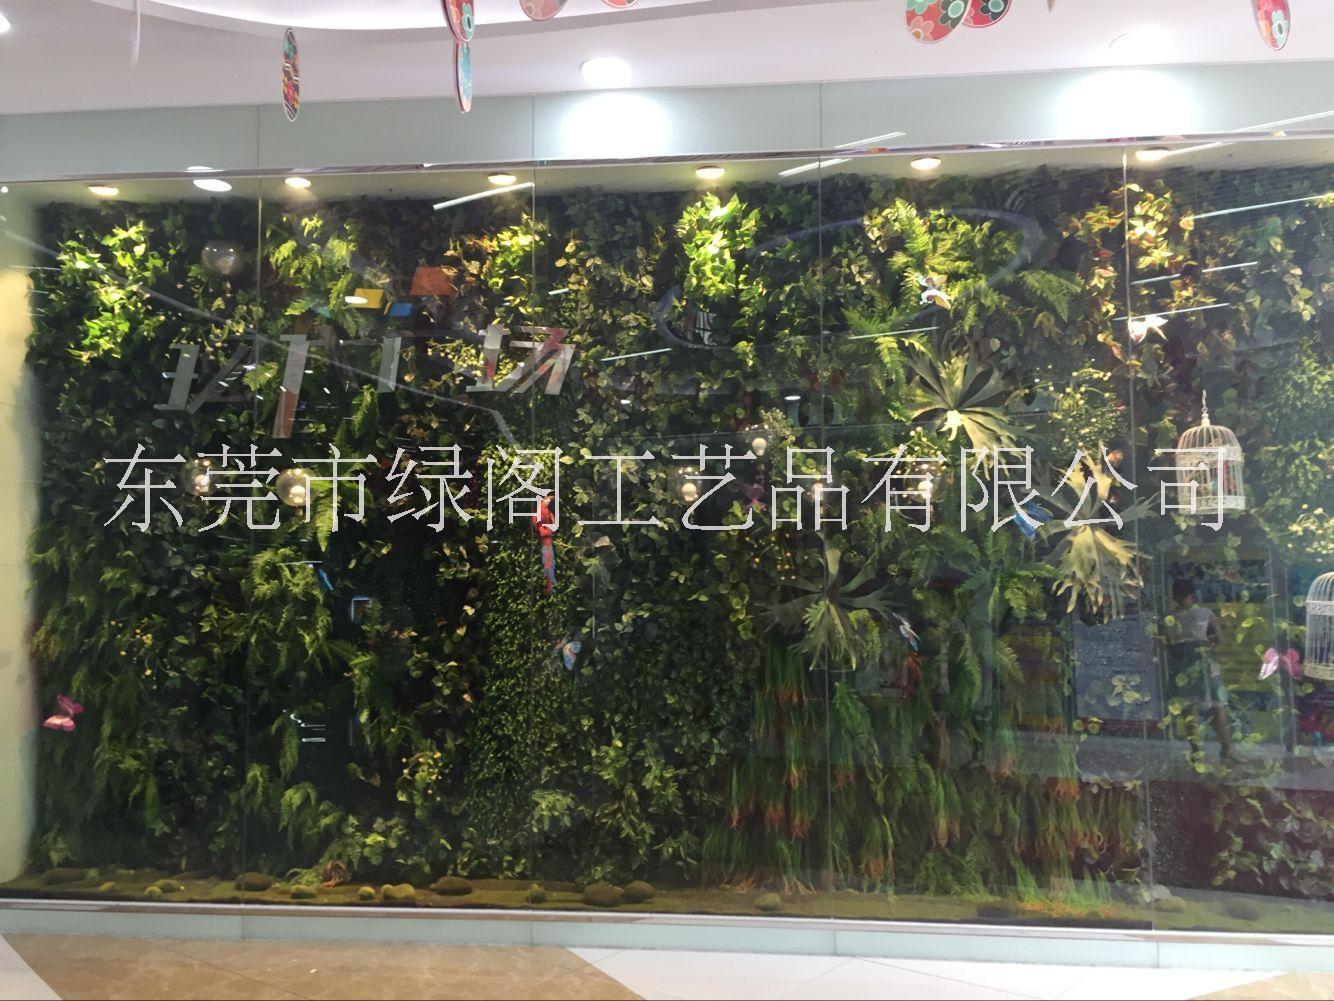 室内植物墙 垂直绿化墙 仿真植物墙酒店大堂背景绿植墙面装饰植物草墙图片